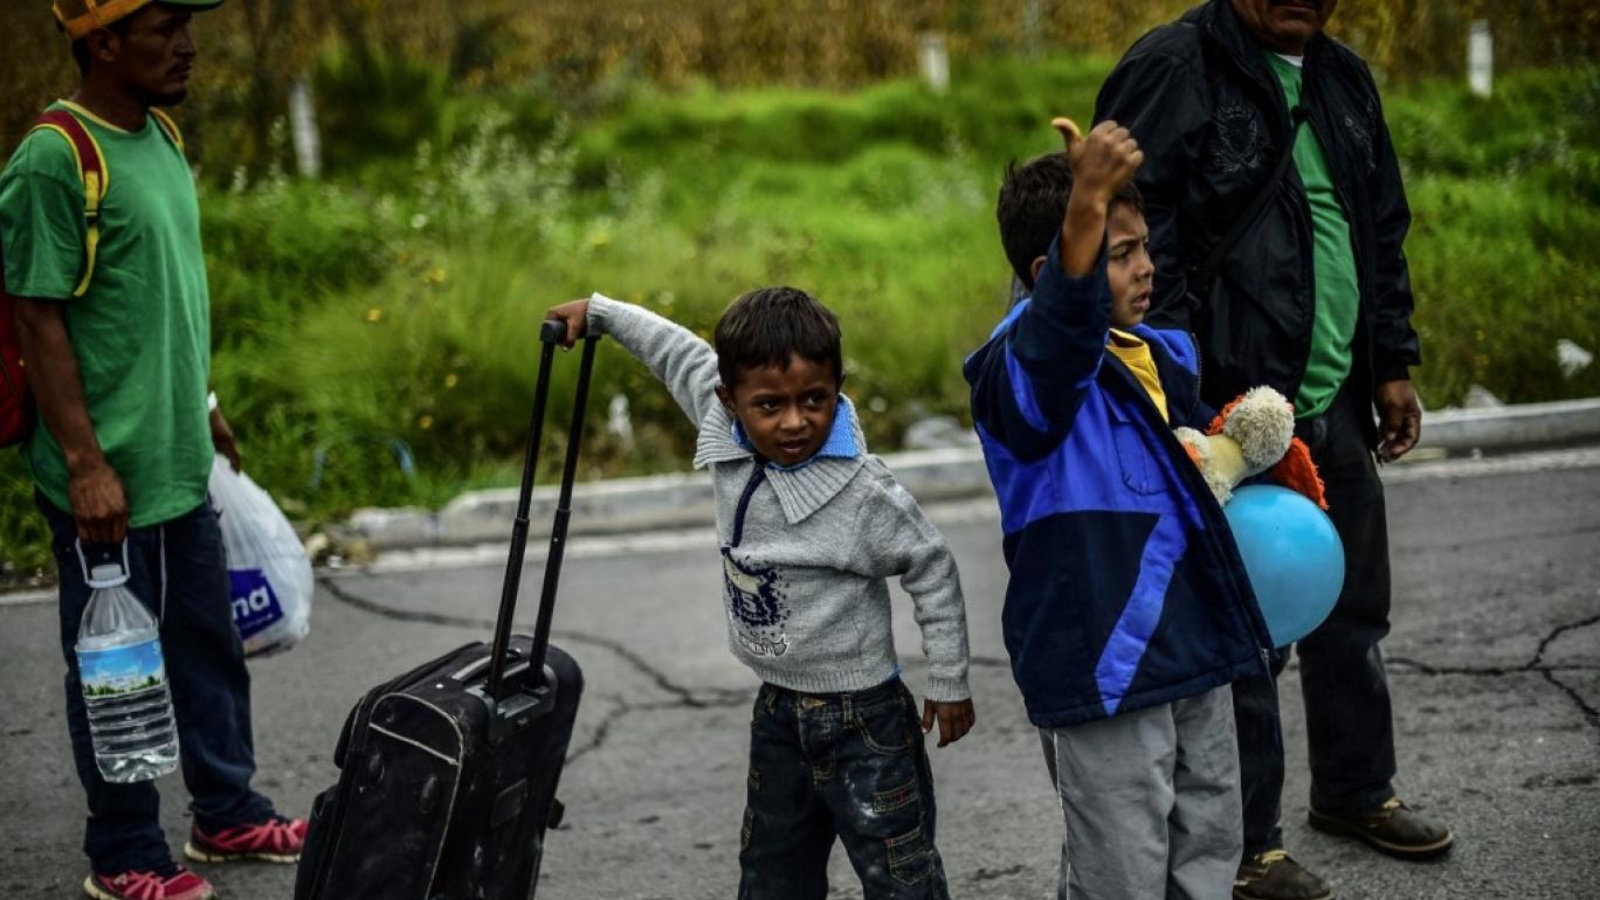 قاصرون من طالبي اللجوء الذين وصلوا إلى المملكة المتحدة 